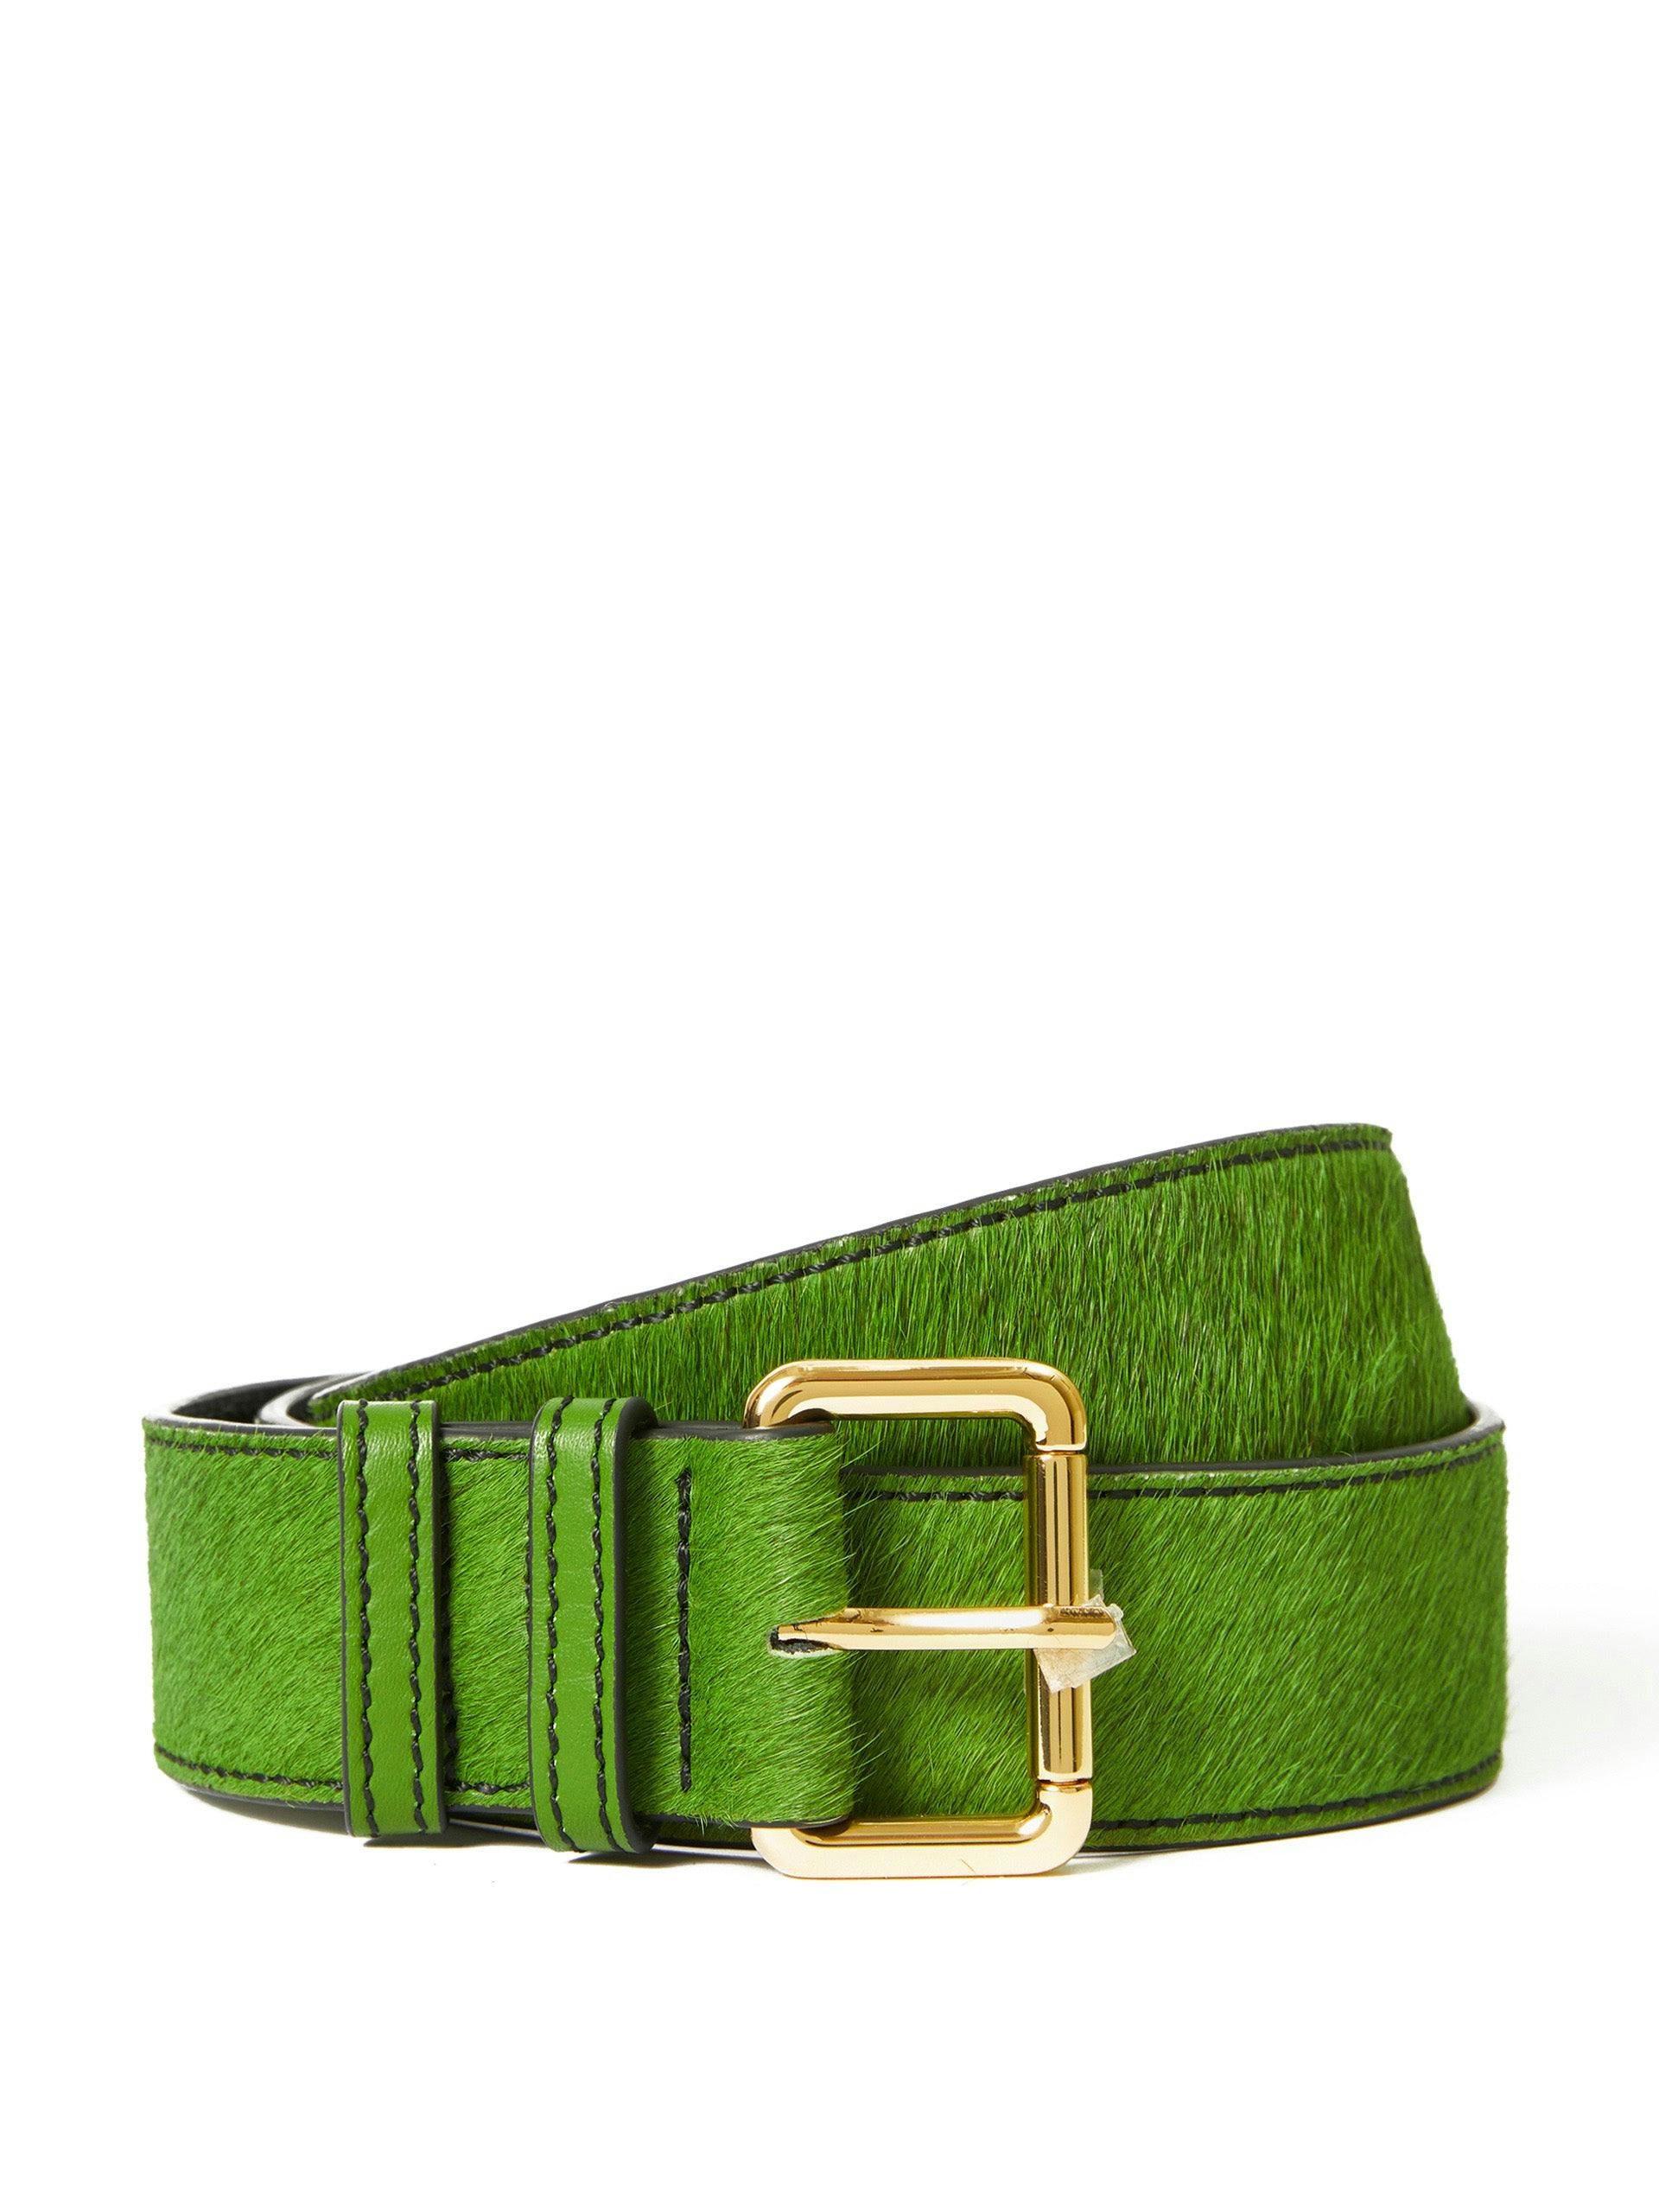 Green calf hair belt